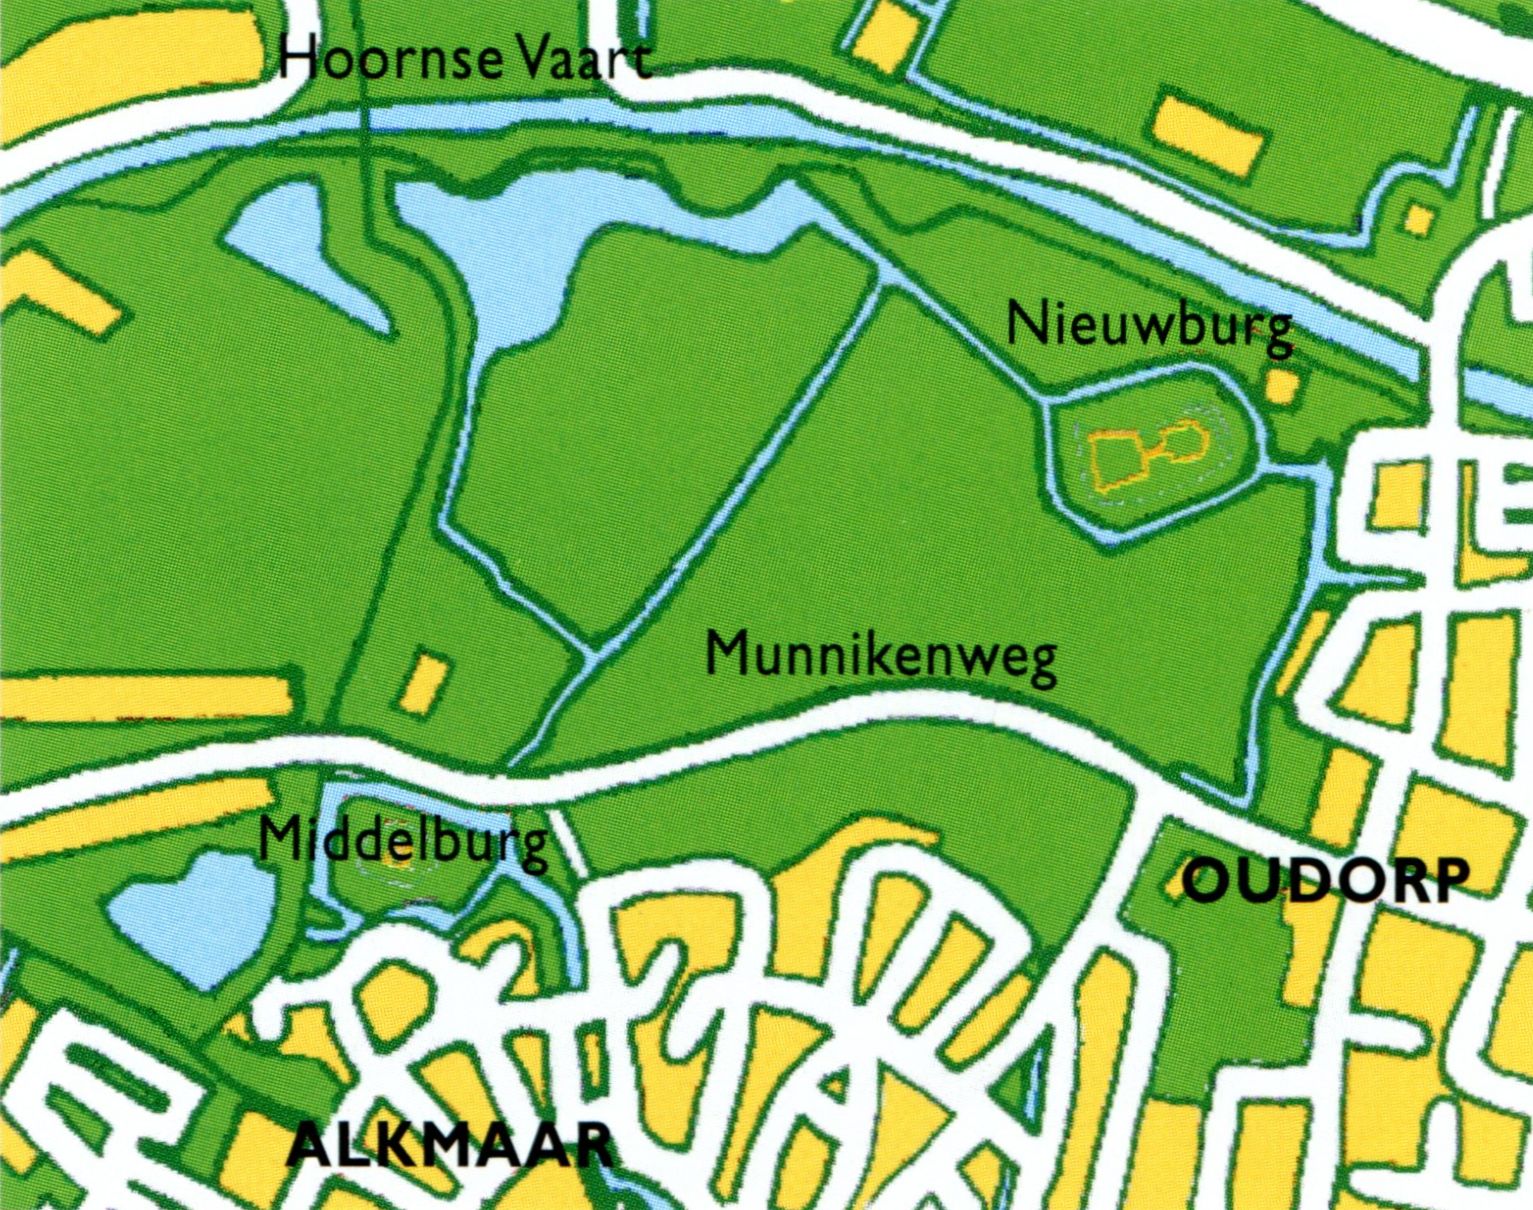 De omgeving van de Middelburg en Nieuwburg tegenwoordig